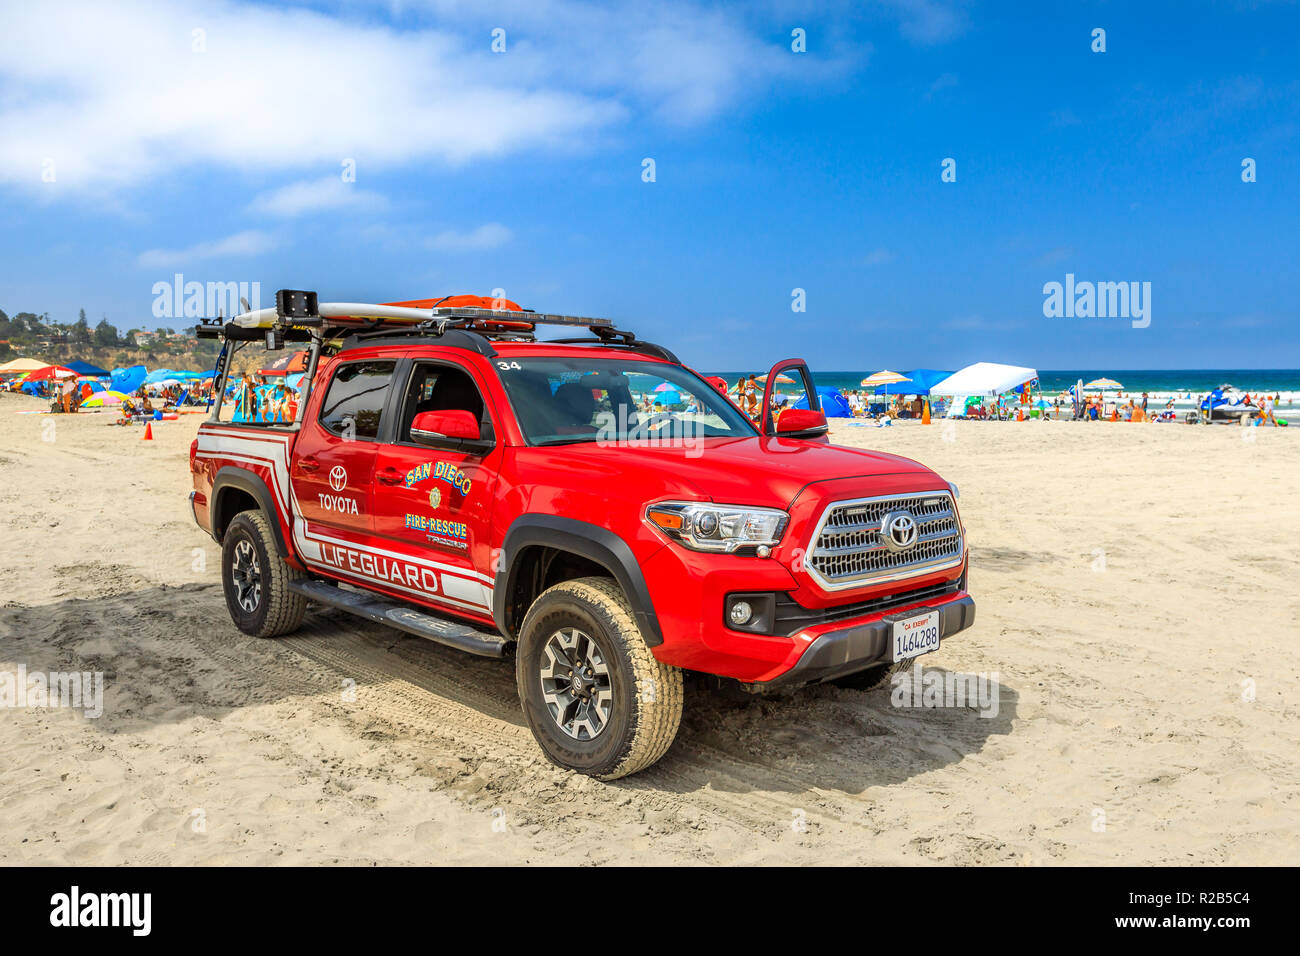 La Jolla, Kalifornien, USA - August 3, 2018: American lifeguard Feuer - Rettung auf dem Sand von La Jolla Beach in San Diego. Kalifornien Feuer, Pazifikküste. Blauer Himmel, der Sommersaison. Platz kopieren Stockfoto